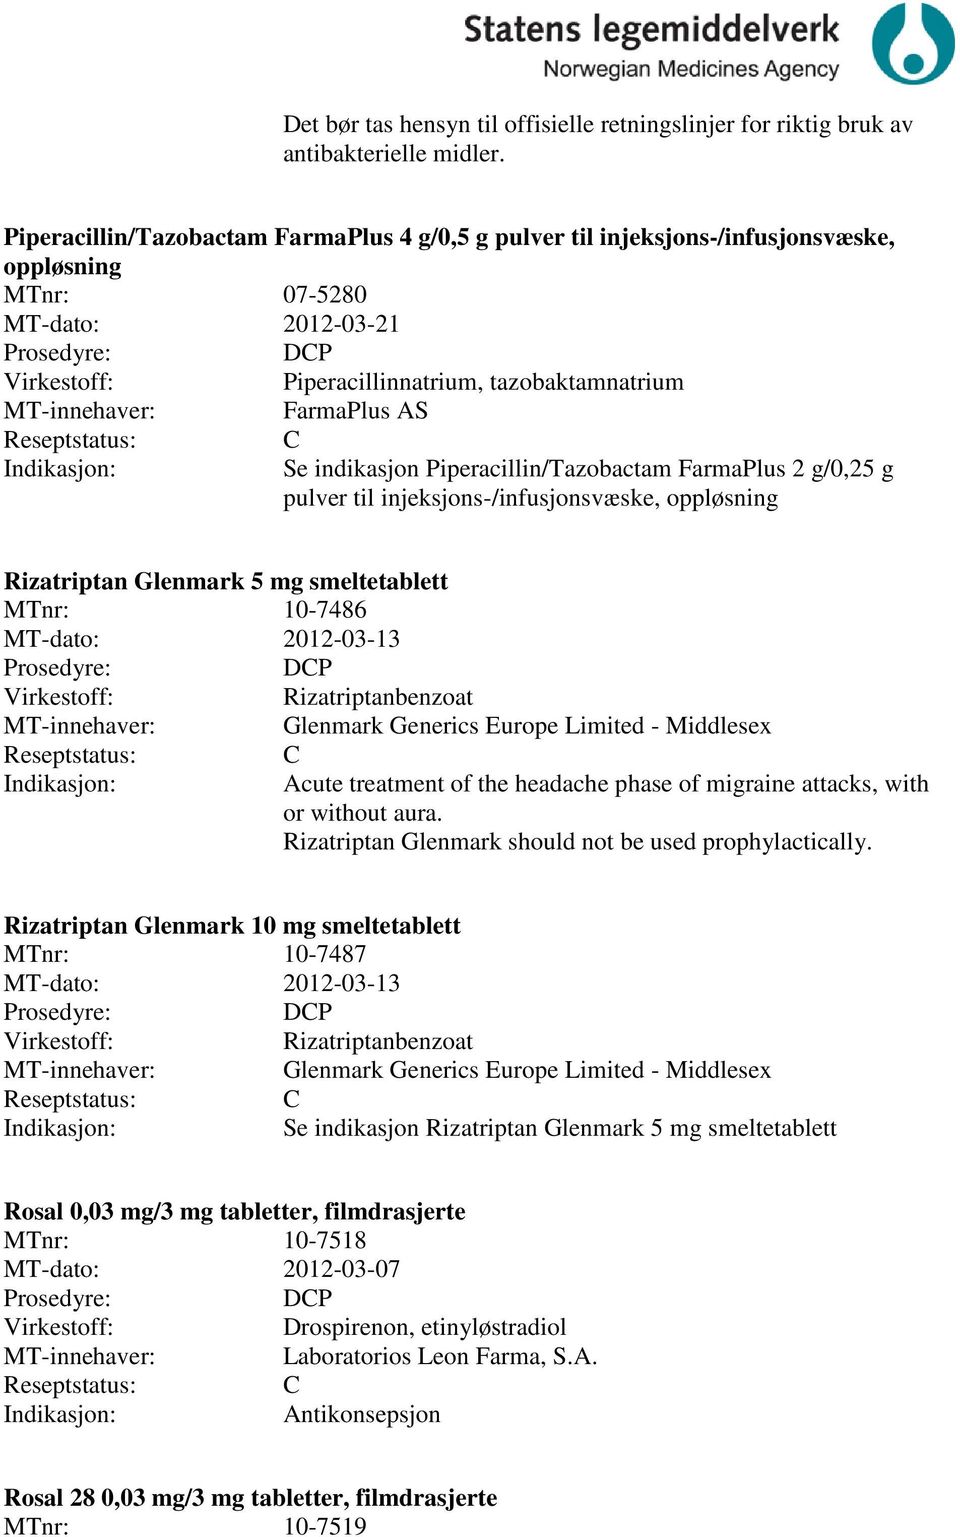 Piperacillin/Tazobactam FarmaPlus 2 g/0,25 g pulver til injeksjons-/infusjonsvæske, oppløsning Rizatriptan Glenmark 5 mg smeltetablett MTnr: 10-7486 MT-dato: 2012-03-13 DP Rizatriptanbenzoat Glenmark